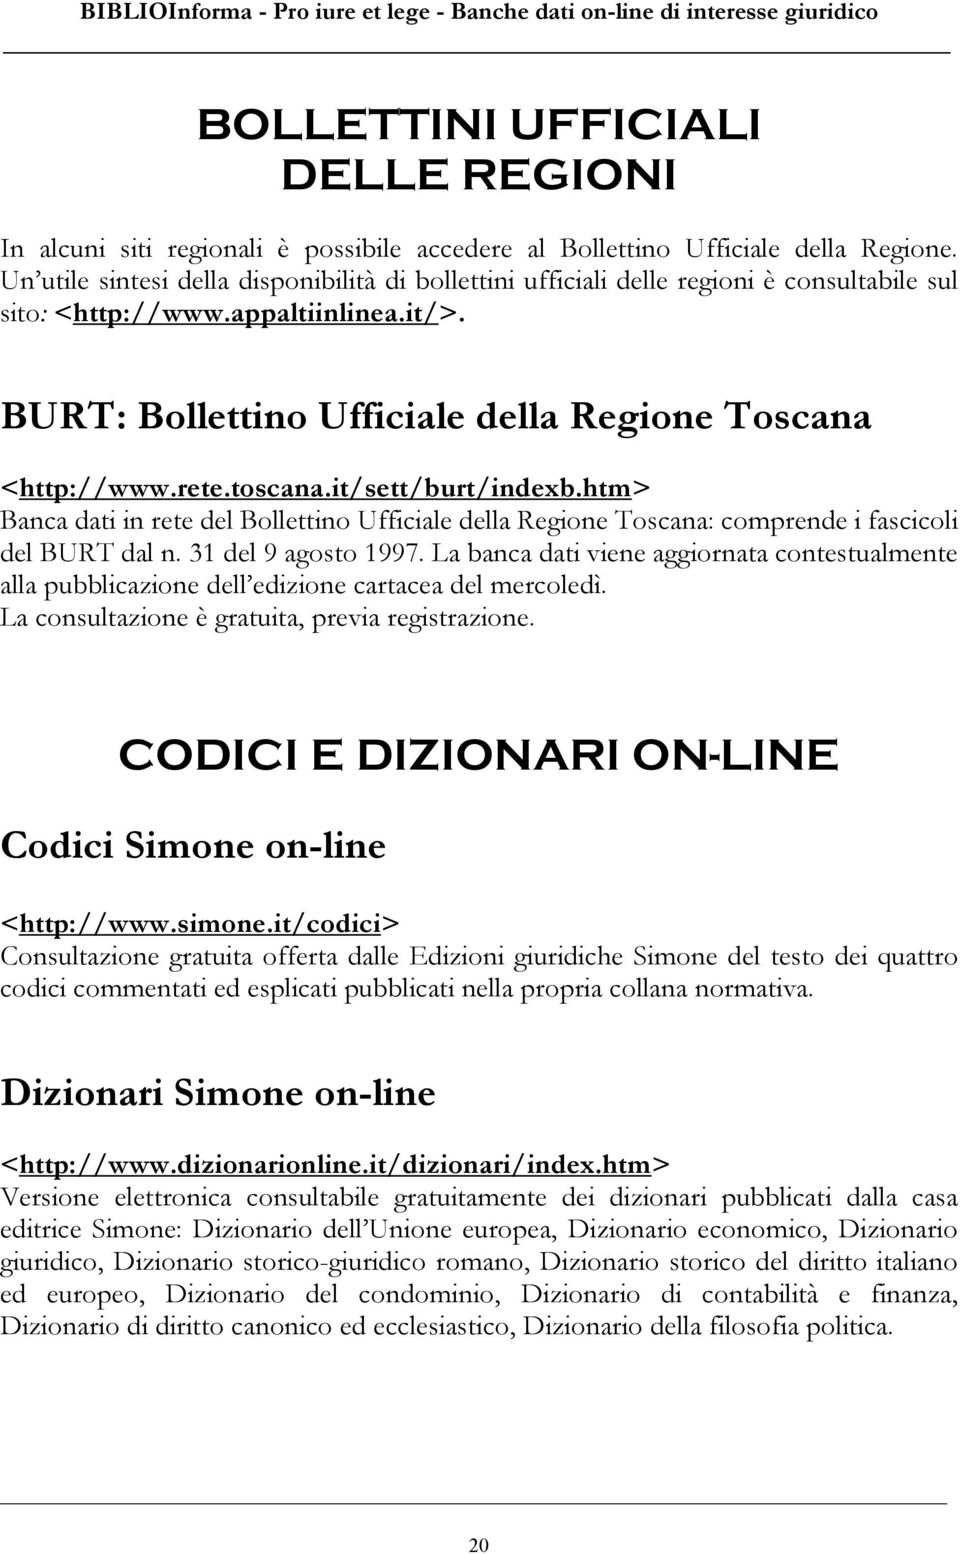 toscana.it/sett/burt/indexb.htm> Banca dati in rete del Bollettino Ufficiale della Regione Toscana: comprende i fascicoli del BURT dal n. 31 del 9 agosto 1997.